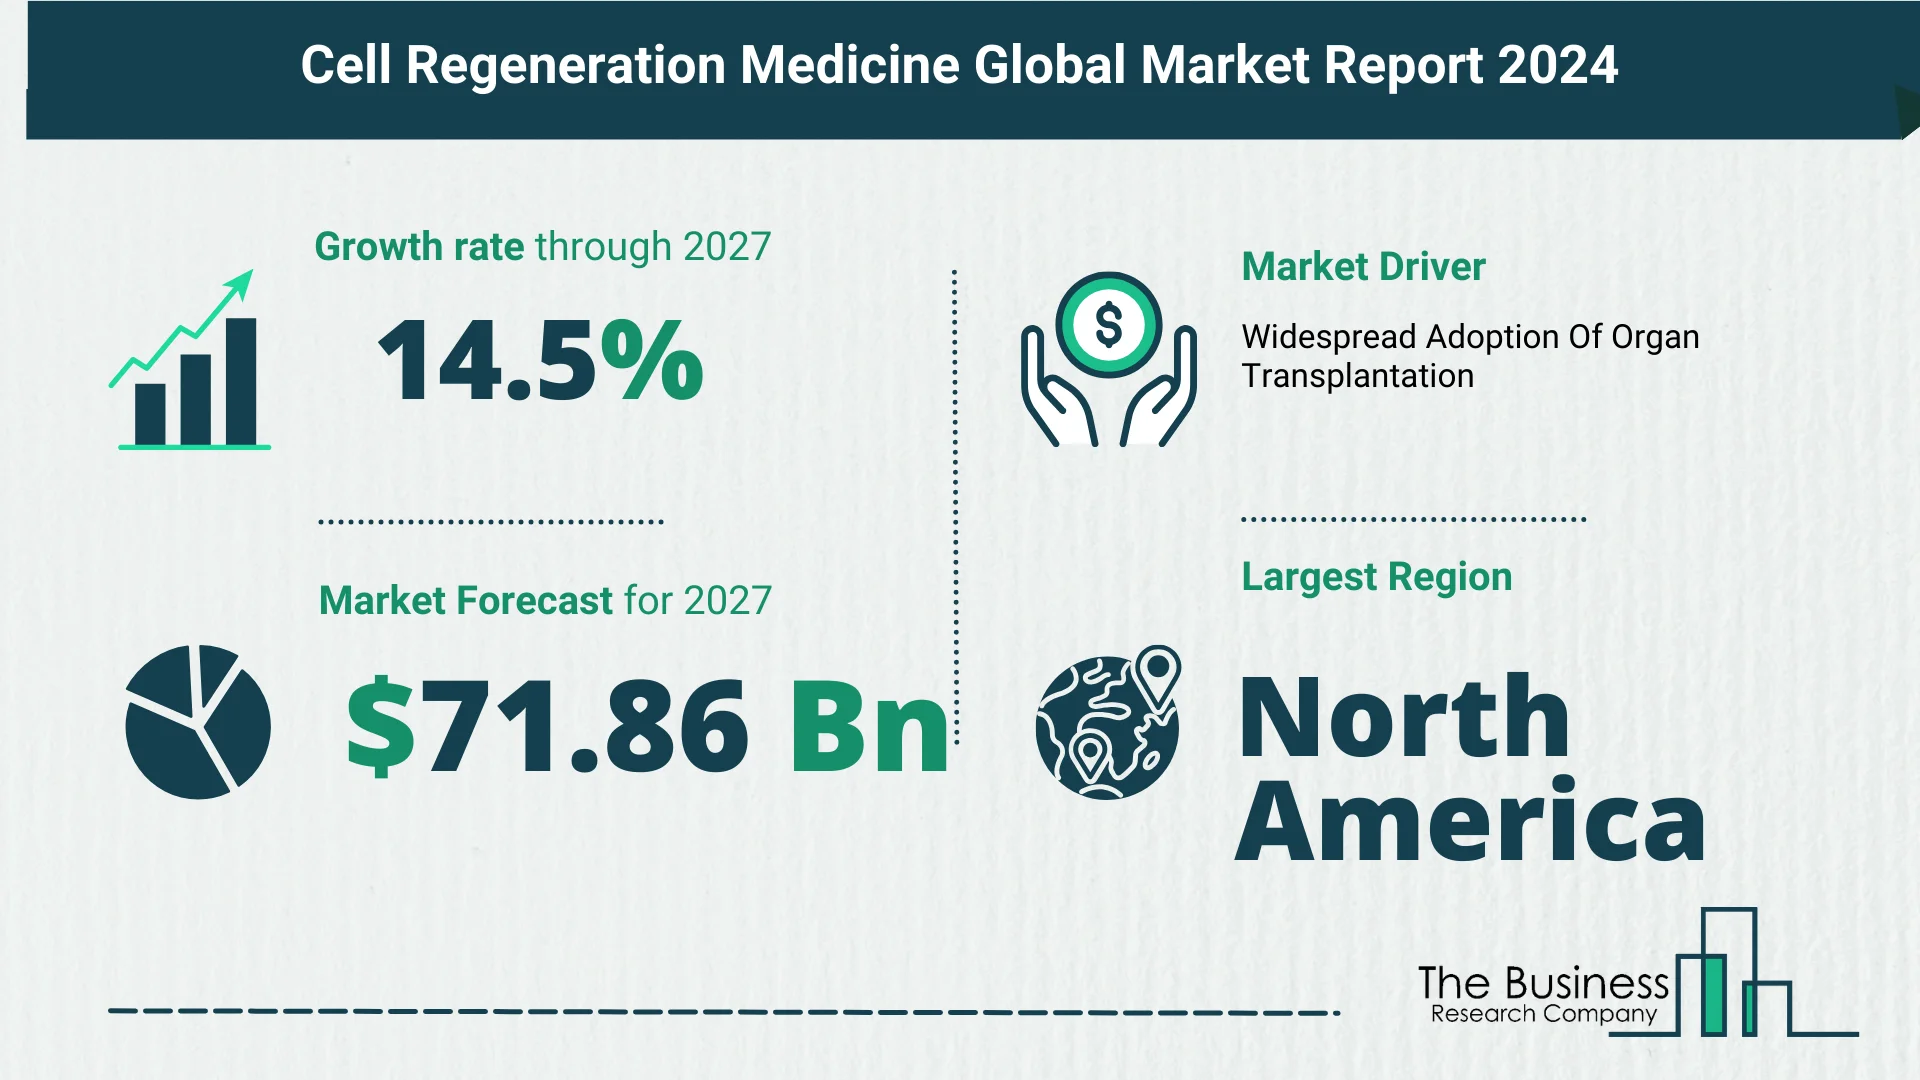 Global Cell Regeneration Medicine Market Size